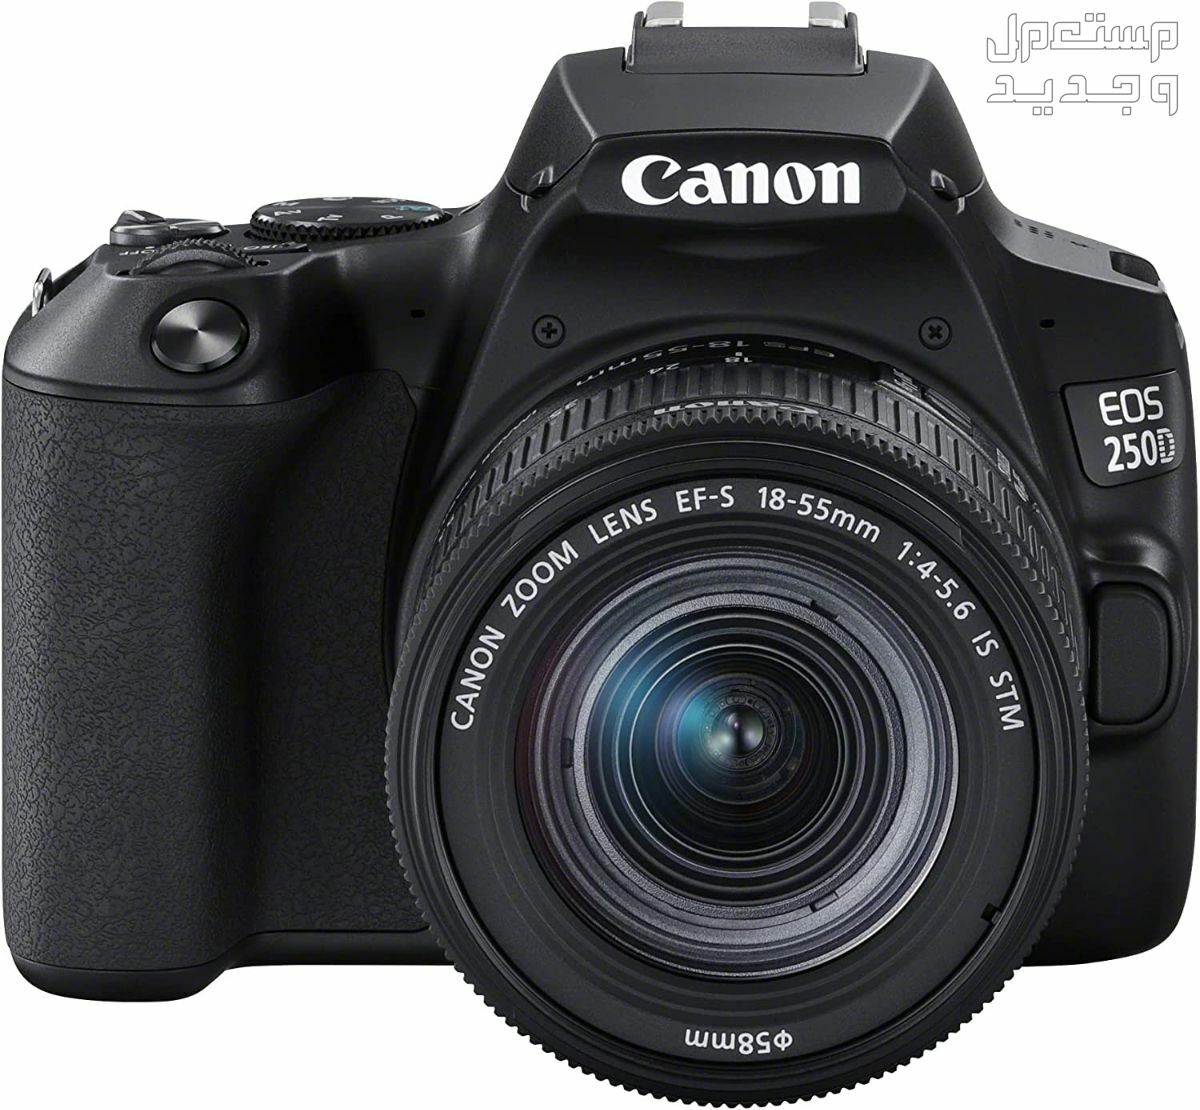 سعر ومميزات ومواصفات أرخص 5 كاميرات تصوير من كانون في ليبيا مميزات كاميرا Canon EOS 250D